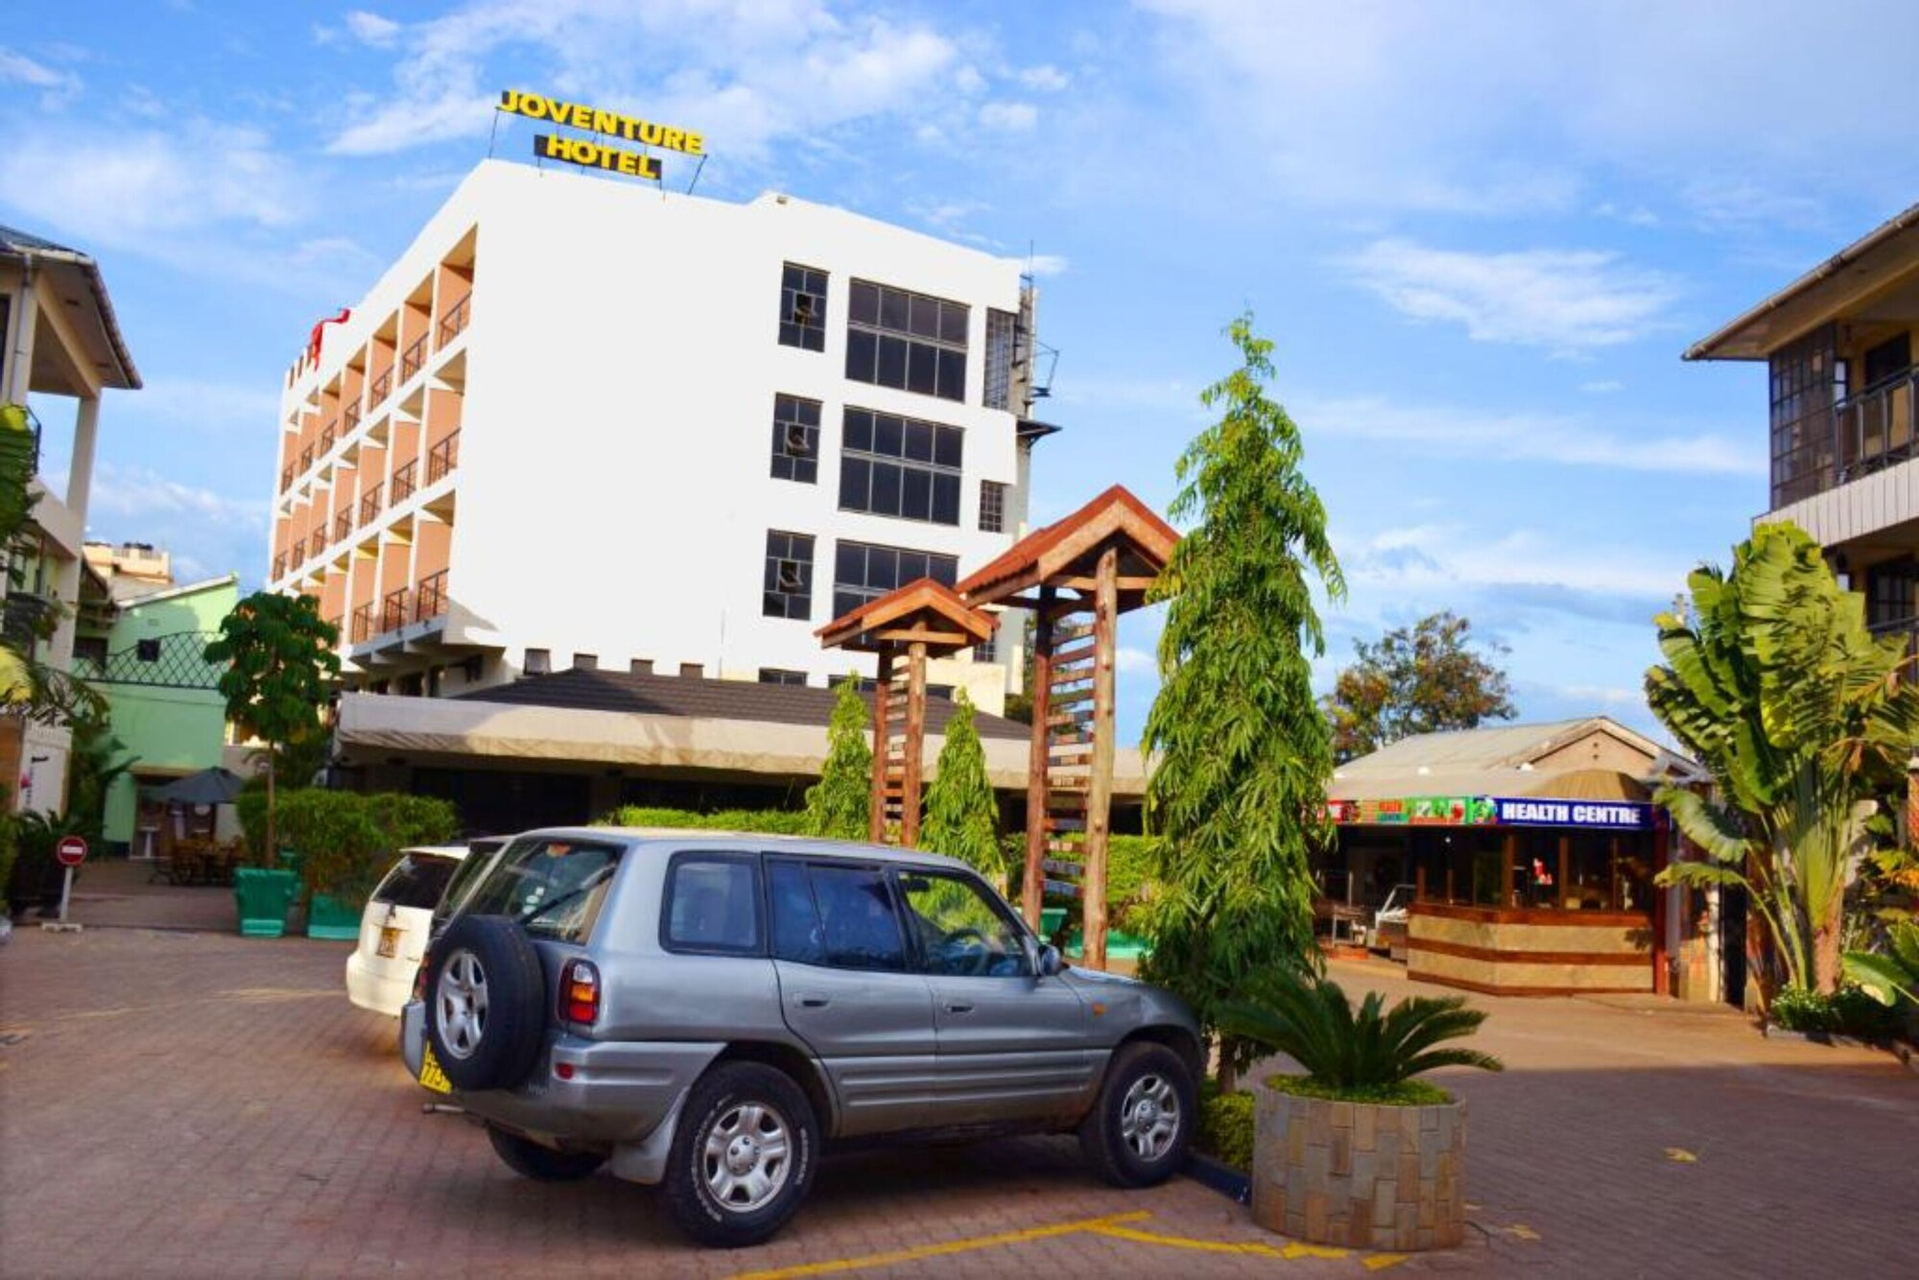 Joventure Hotel, Kisumu East